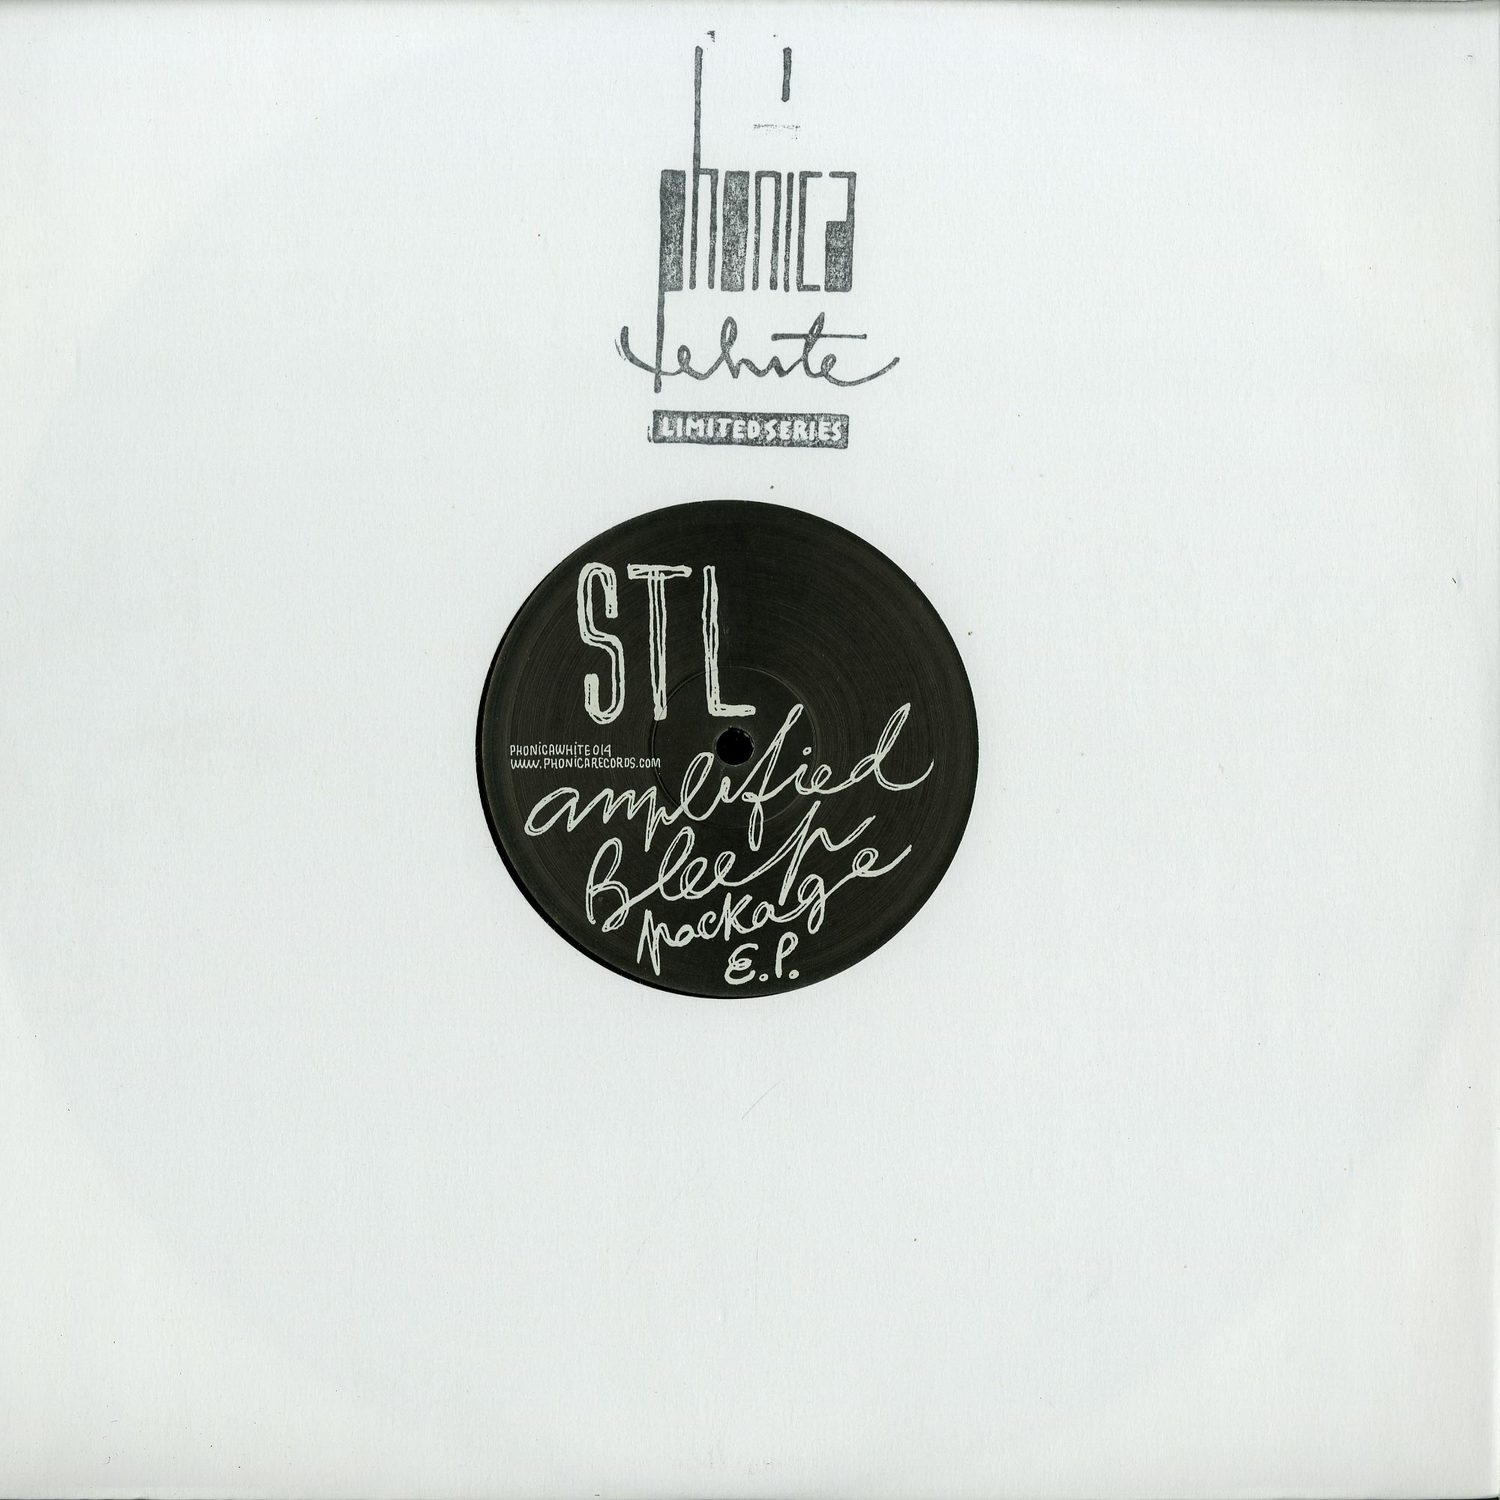 STL - AMPLIFIED BLEEP PACKAGE EP